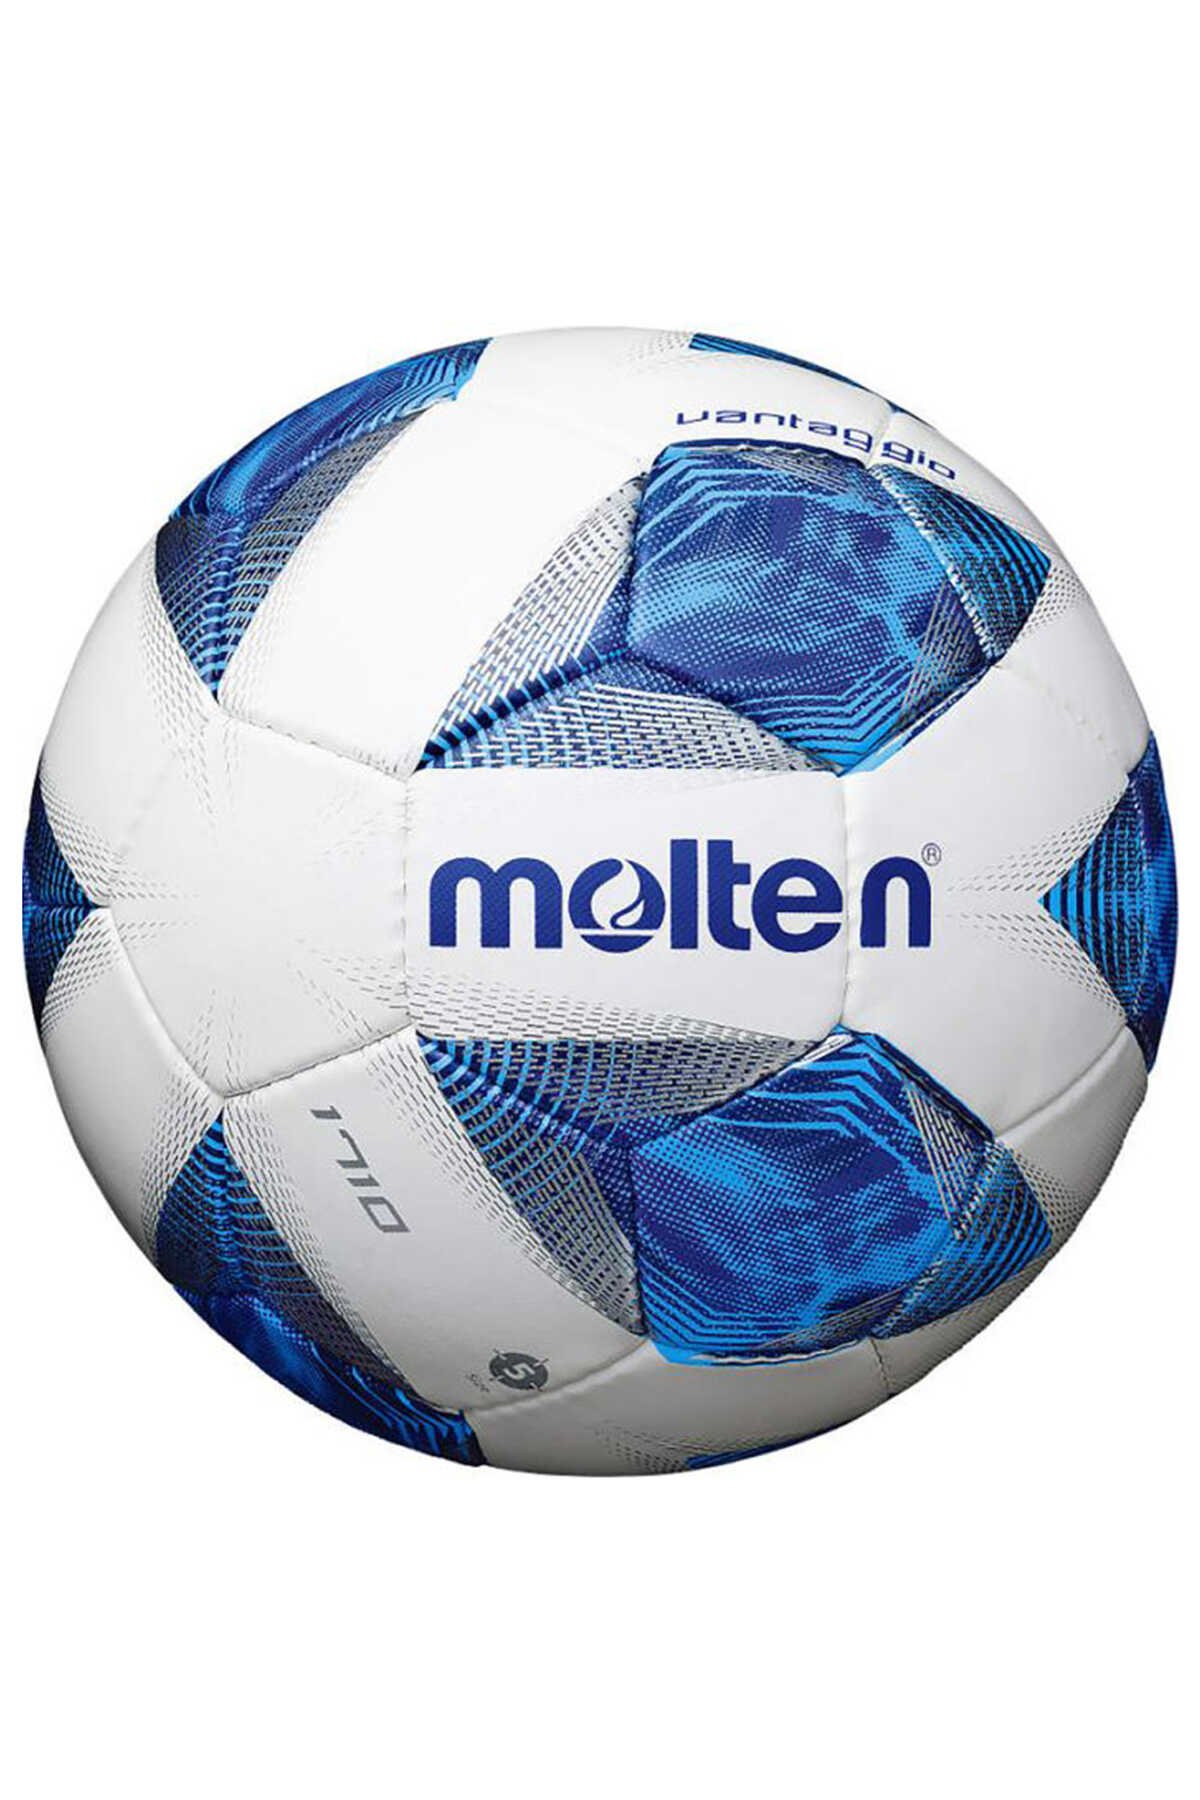 Molten - Molten 5 Numara Futbol Topu Mavi / Beyaz